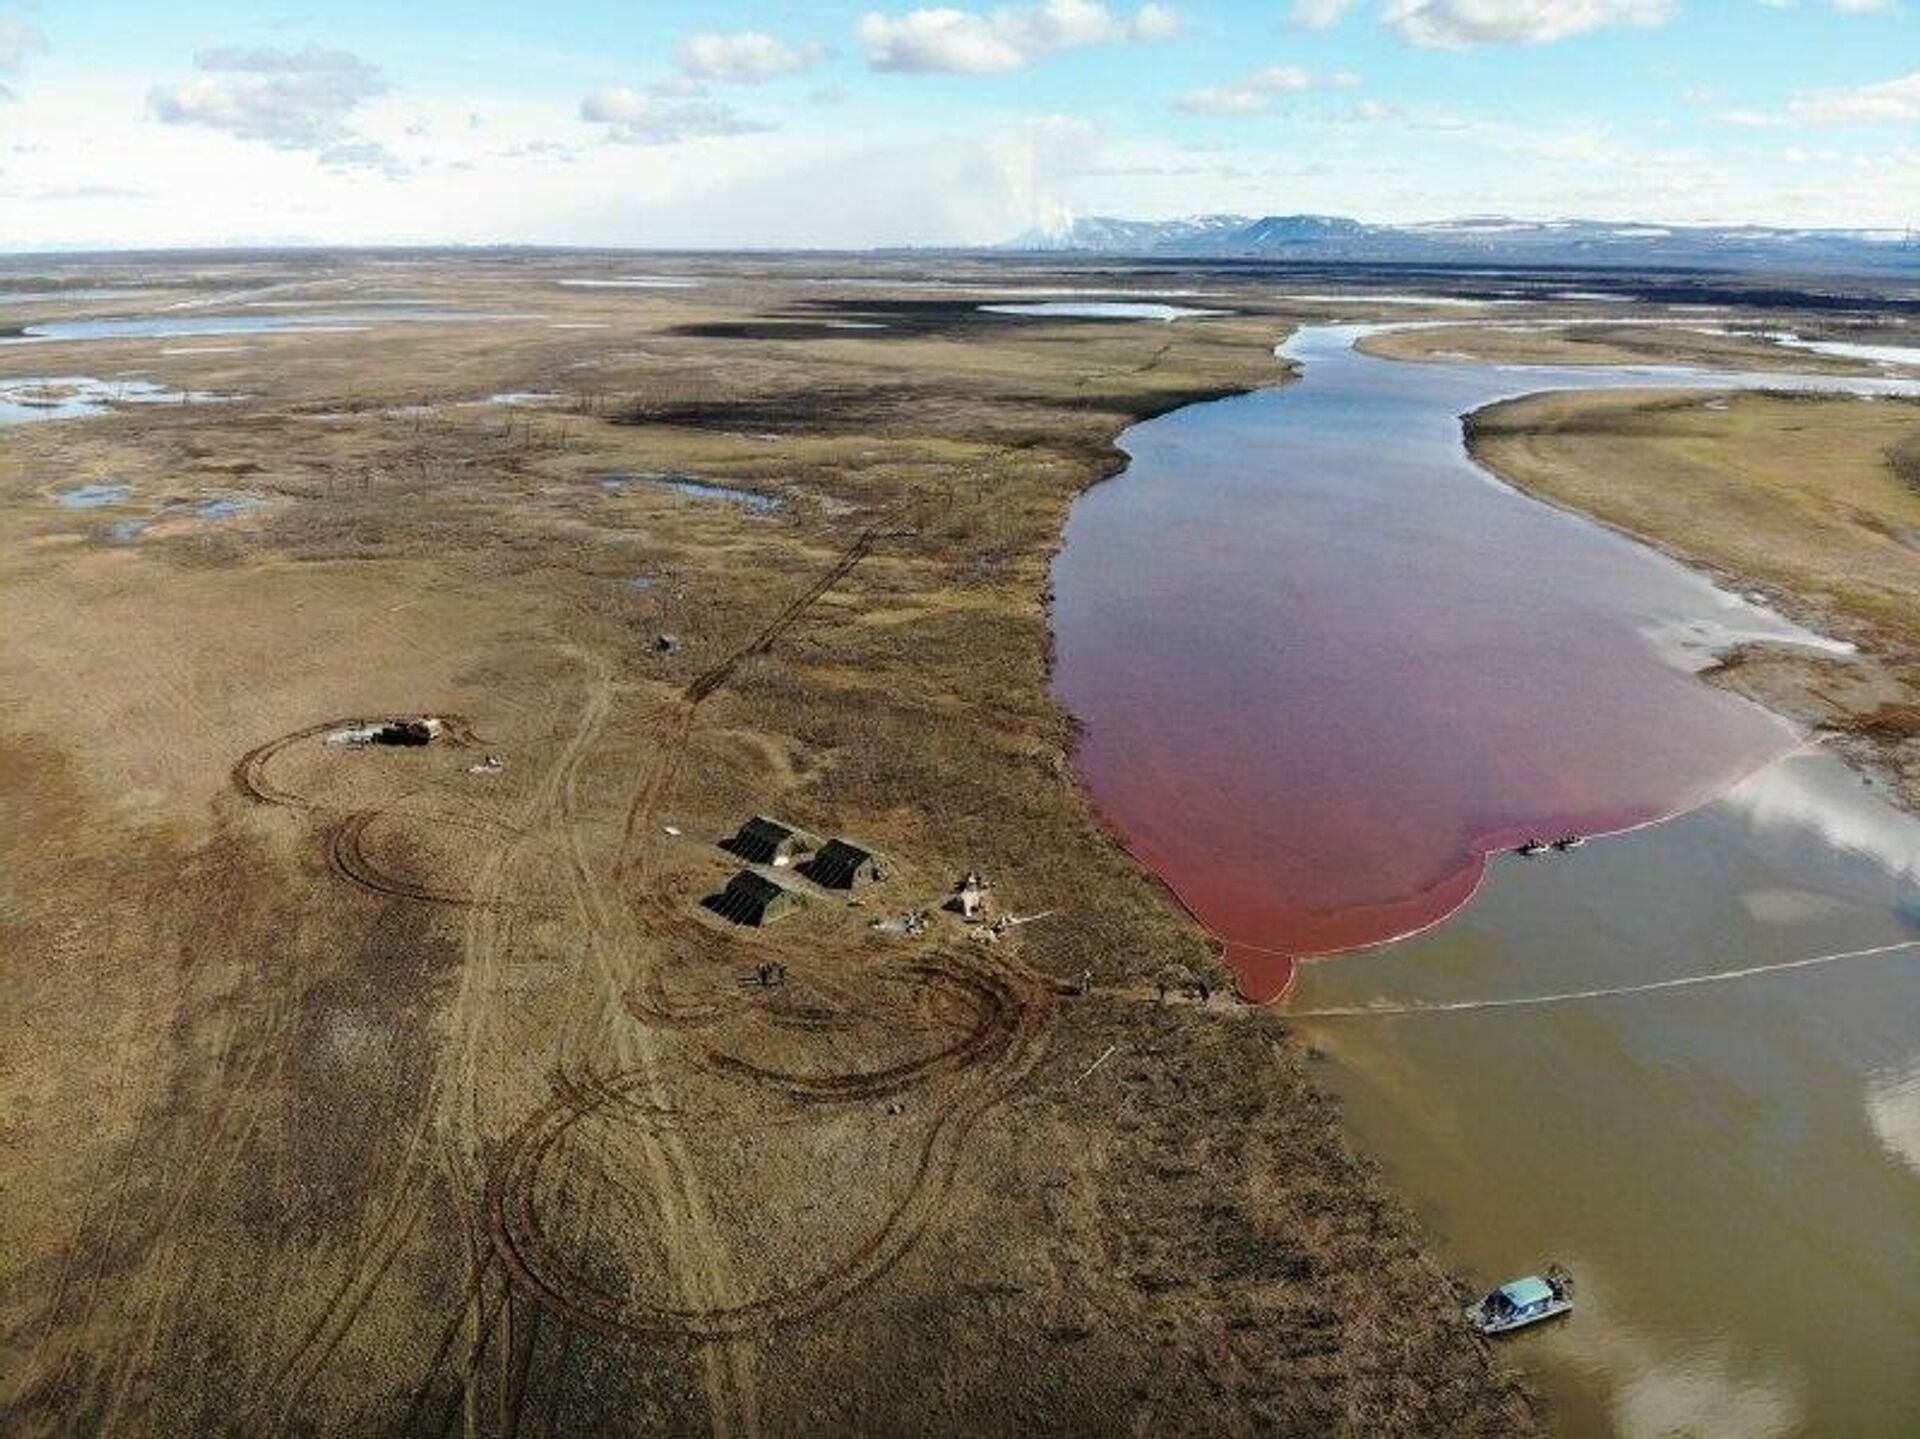 В небольшом водоеме образовавшемся после разлива реки. Экологическая катастрофа в Норильске 2020. Разлив нефти в Норильске 2020. Катастрофа в Норильске 2020 разлив нефтепродуктов. Разлив нефтепродуктов Норильск 2020.